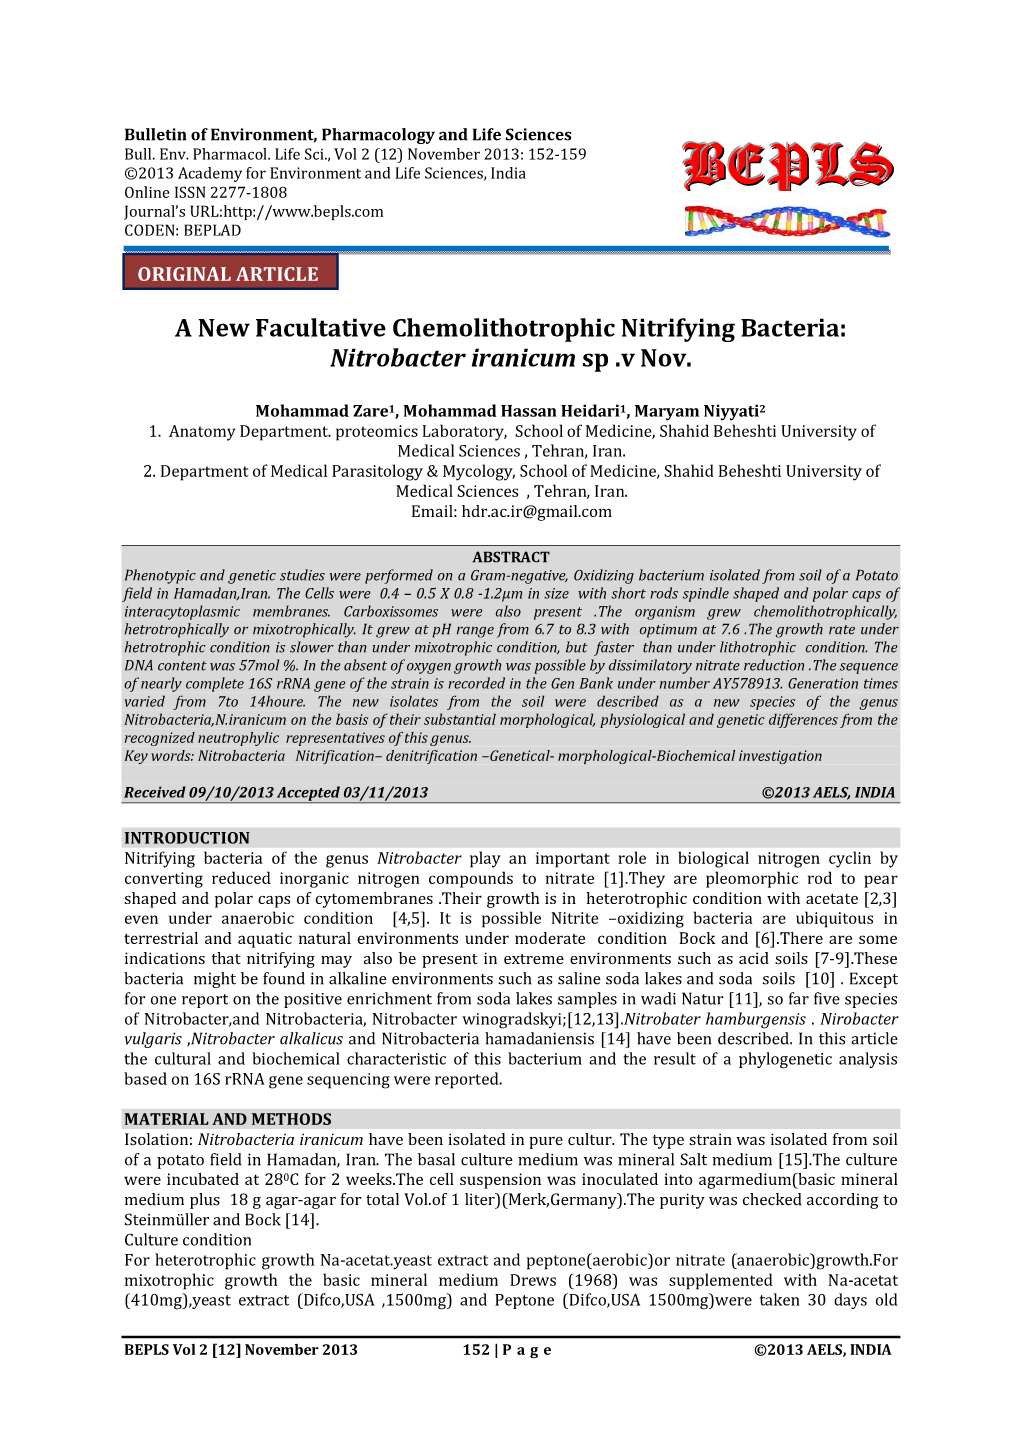 A New Facultative Chemolithotrophic Nitrifying Bacteria: Nitrobacter Iranicum Sp .V Nov